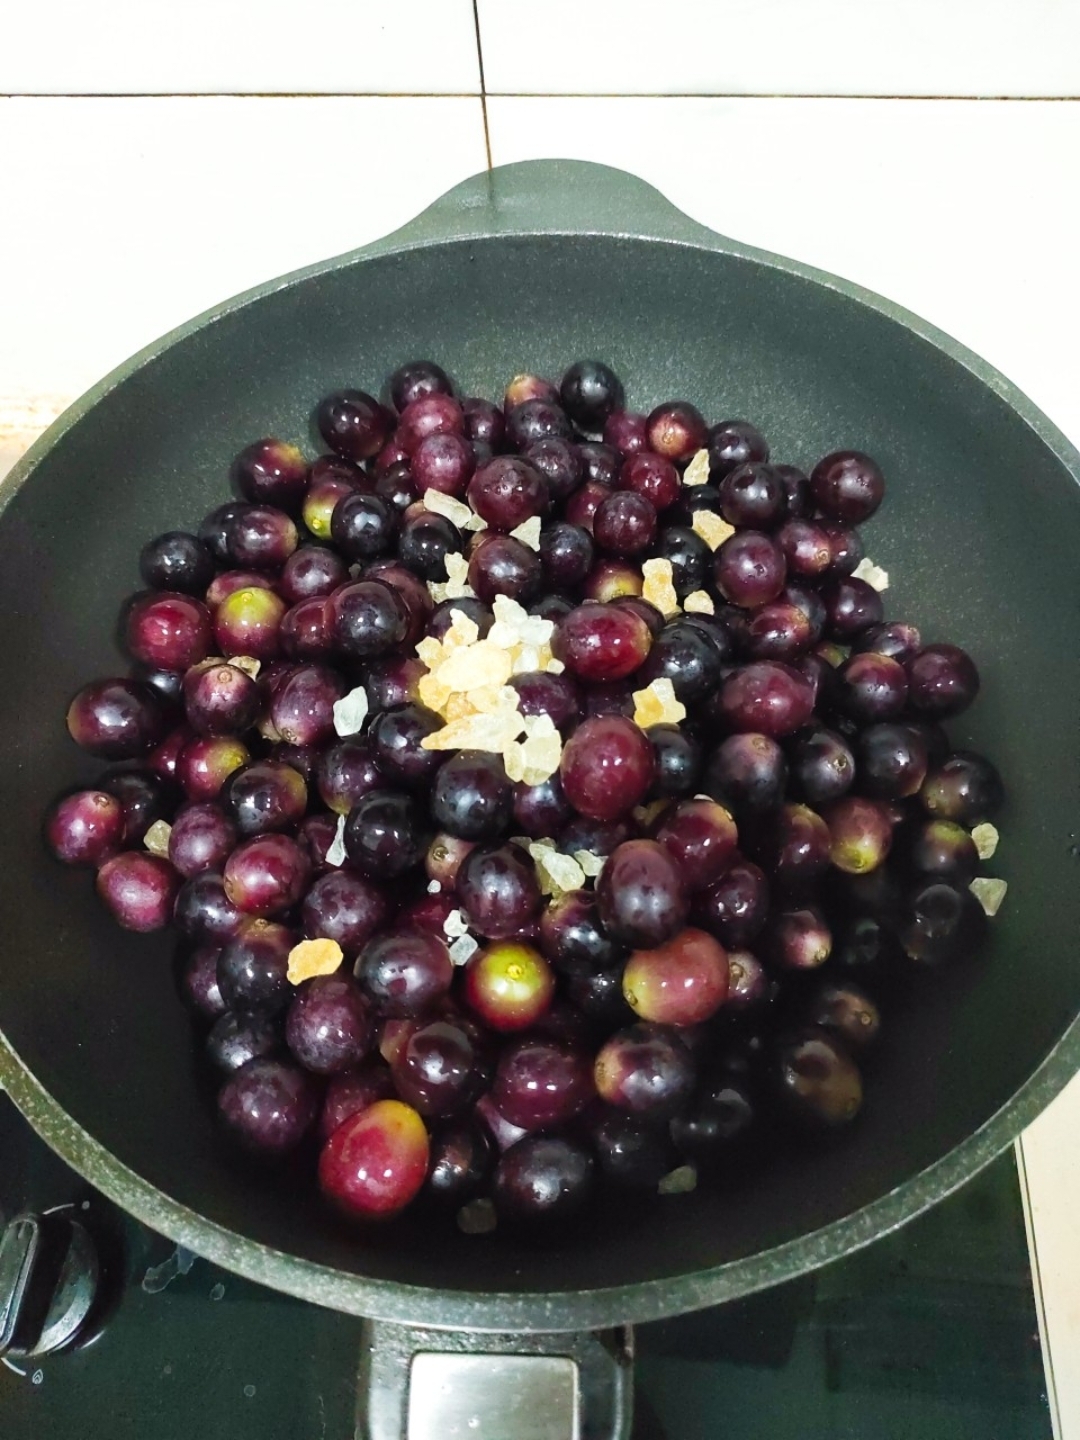 【自制葡萄果酱】有籽葡萄的做法+浓稠度对比